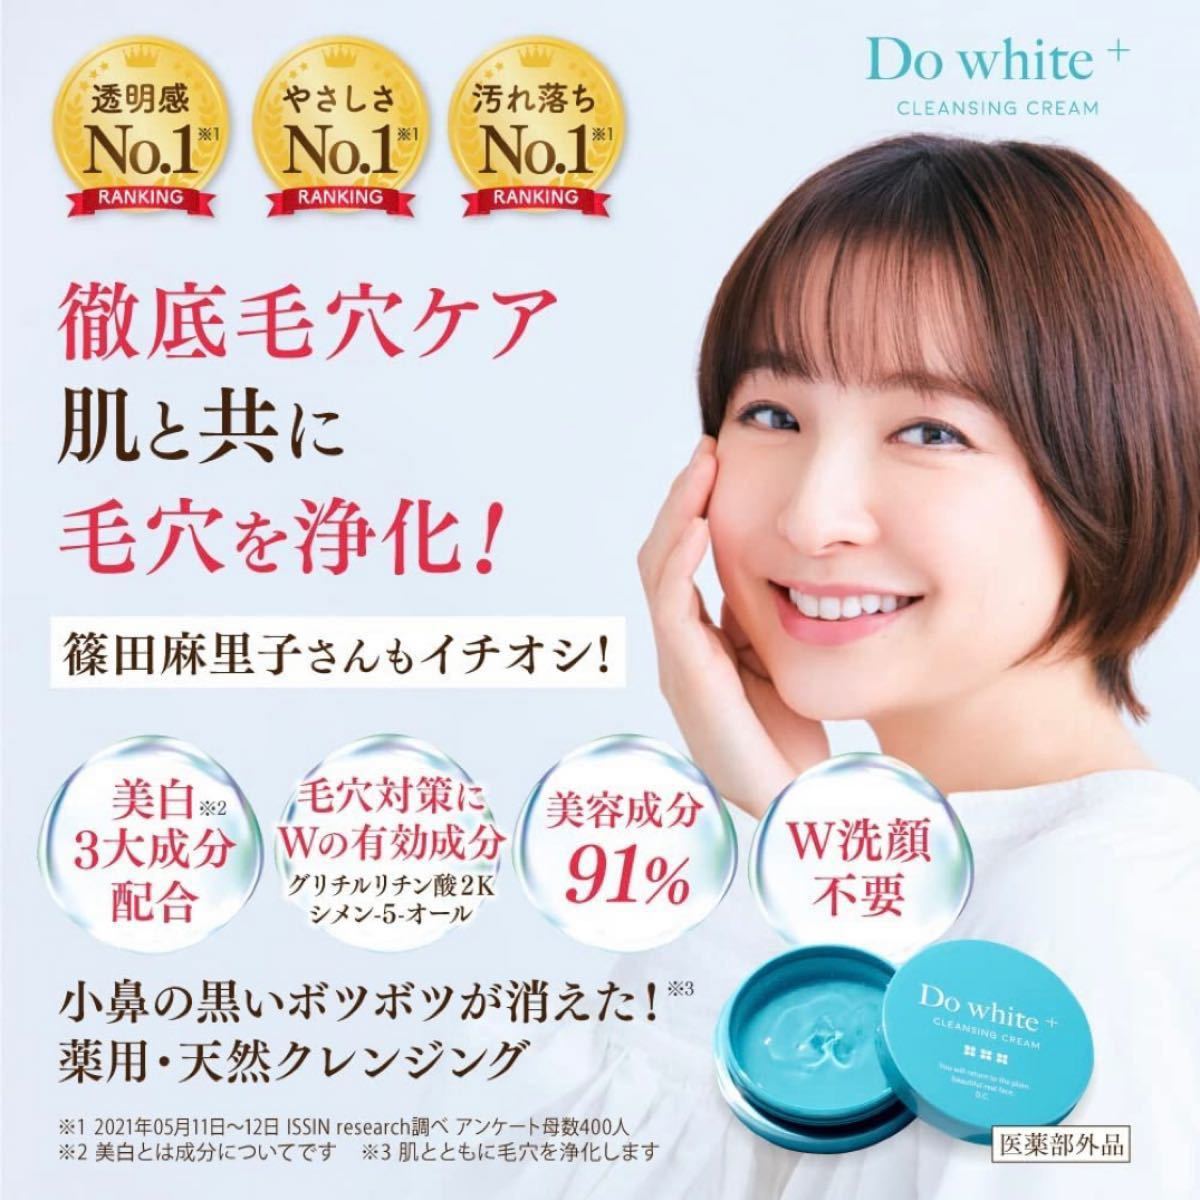 Do white＋ ドゥホワイトプラス クレンジング3本セット - 基礎化粧品